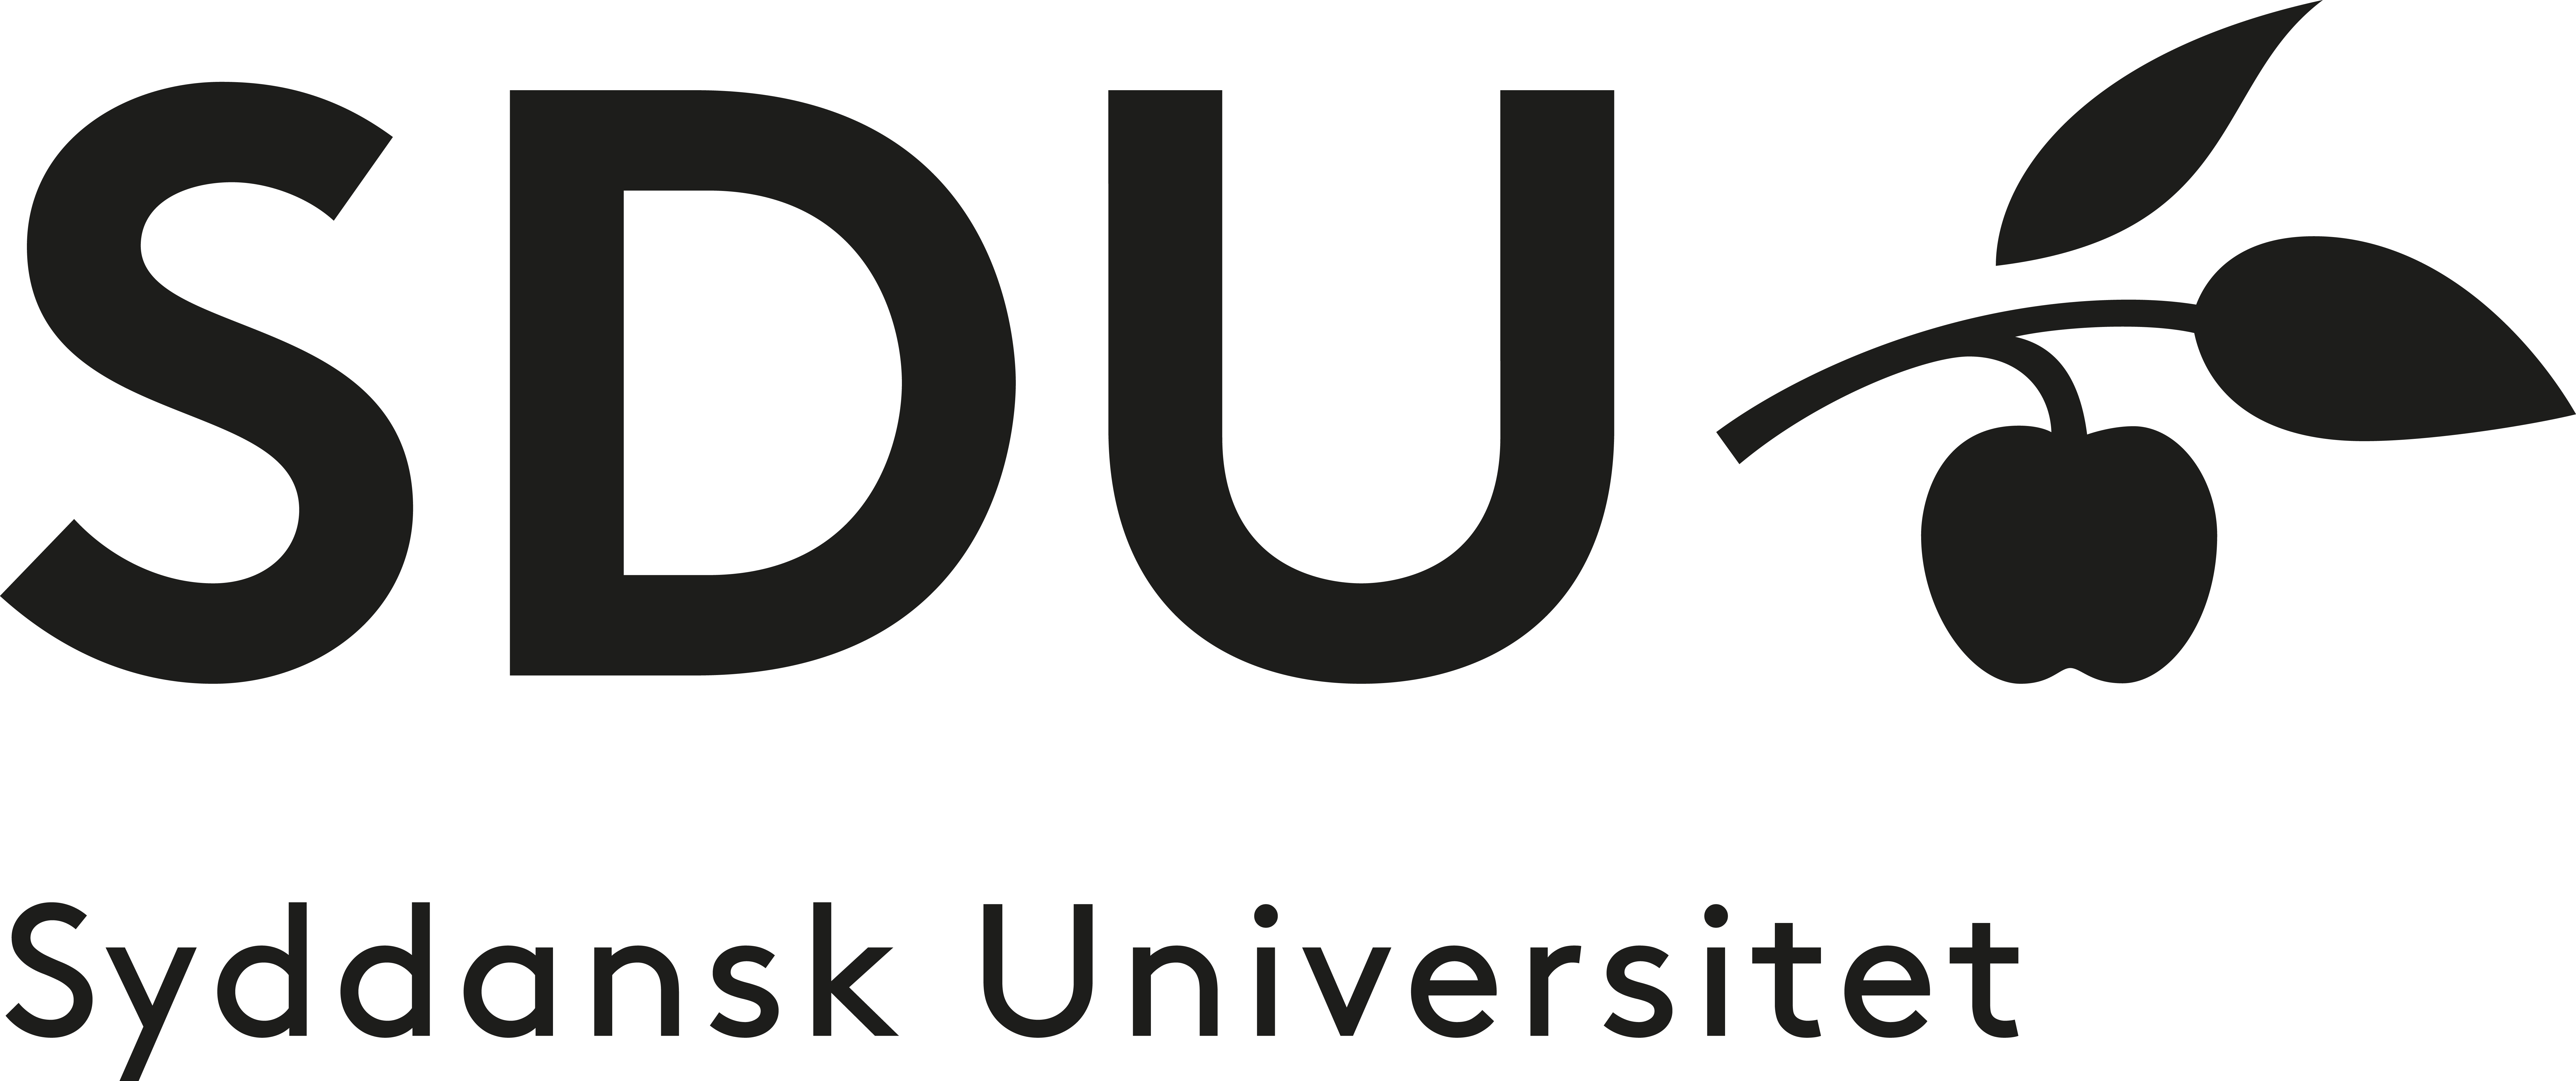 SyddanskUniversitet